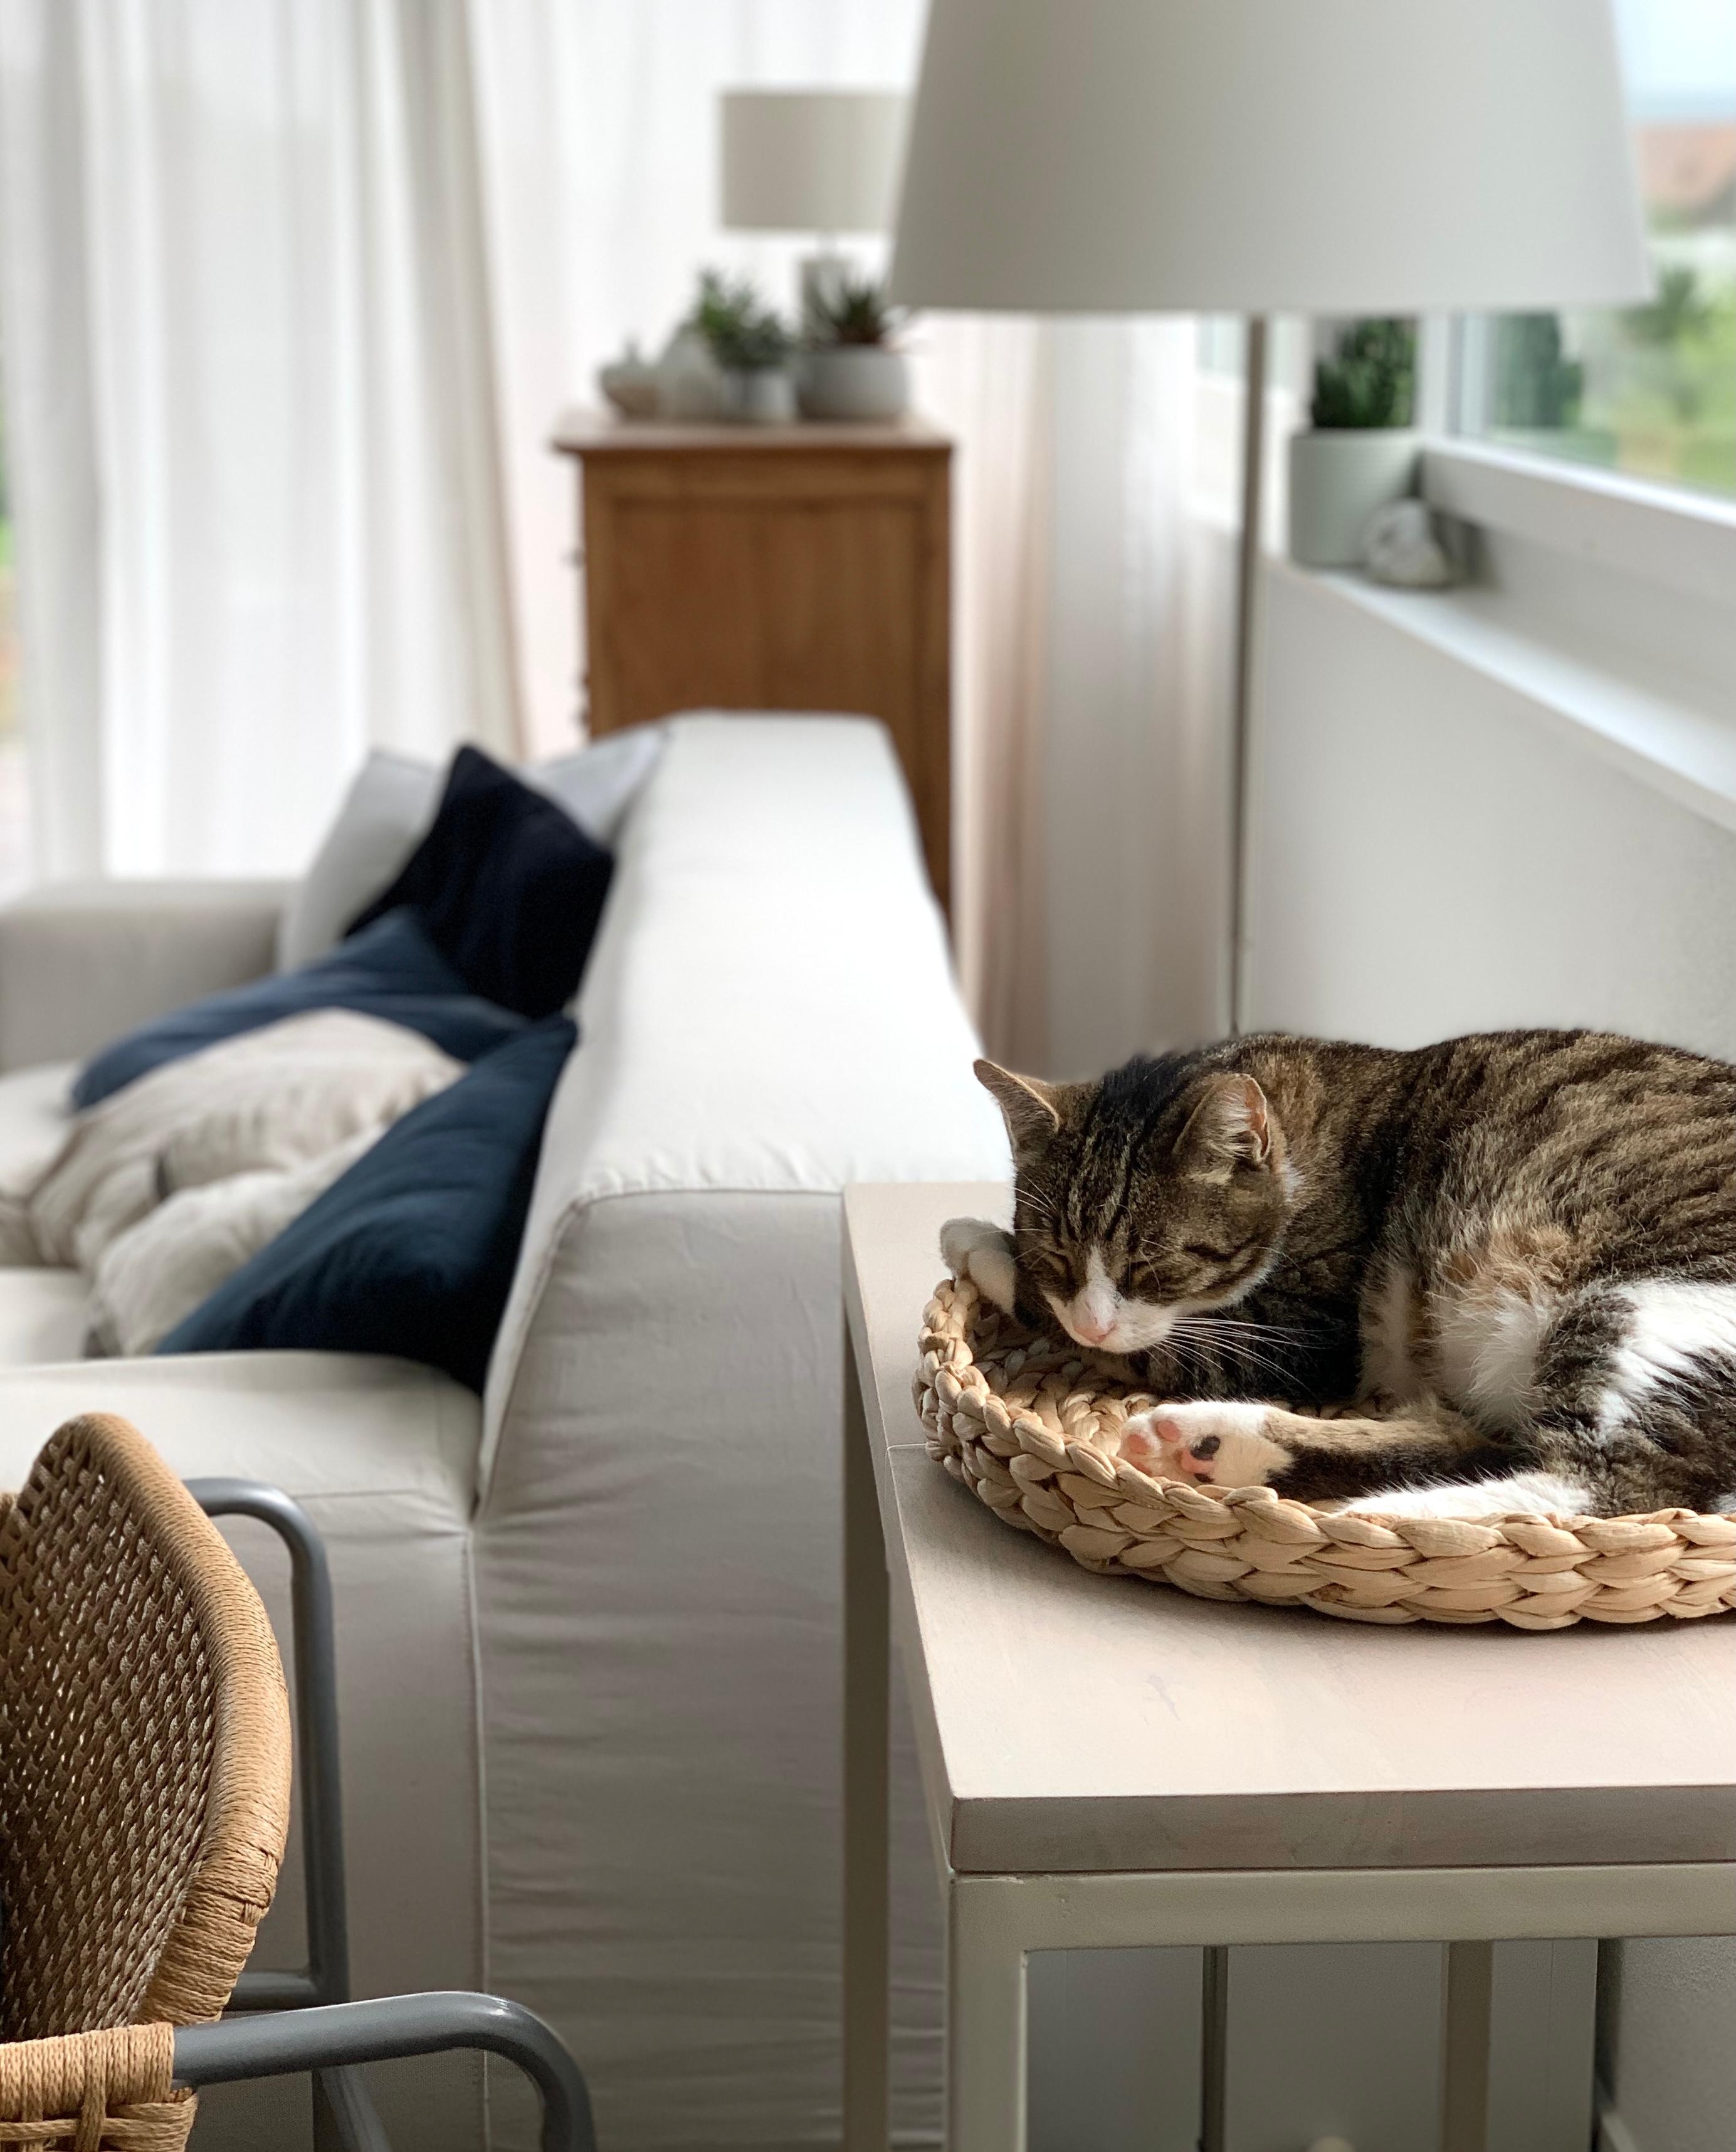 Katers Lieblingsplatz... nicht auf dem Bild: sein Schnarchen dringt durchs ganze Wohnzimmer 😌 #lebenmitkatzen